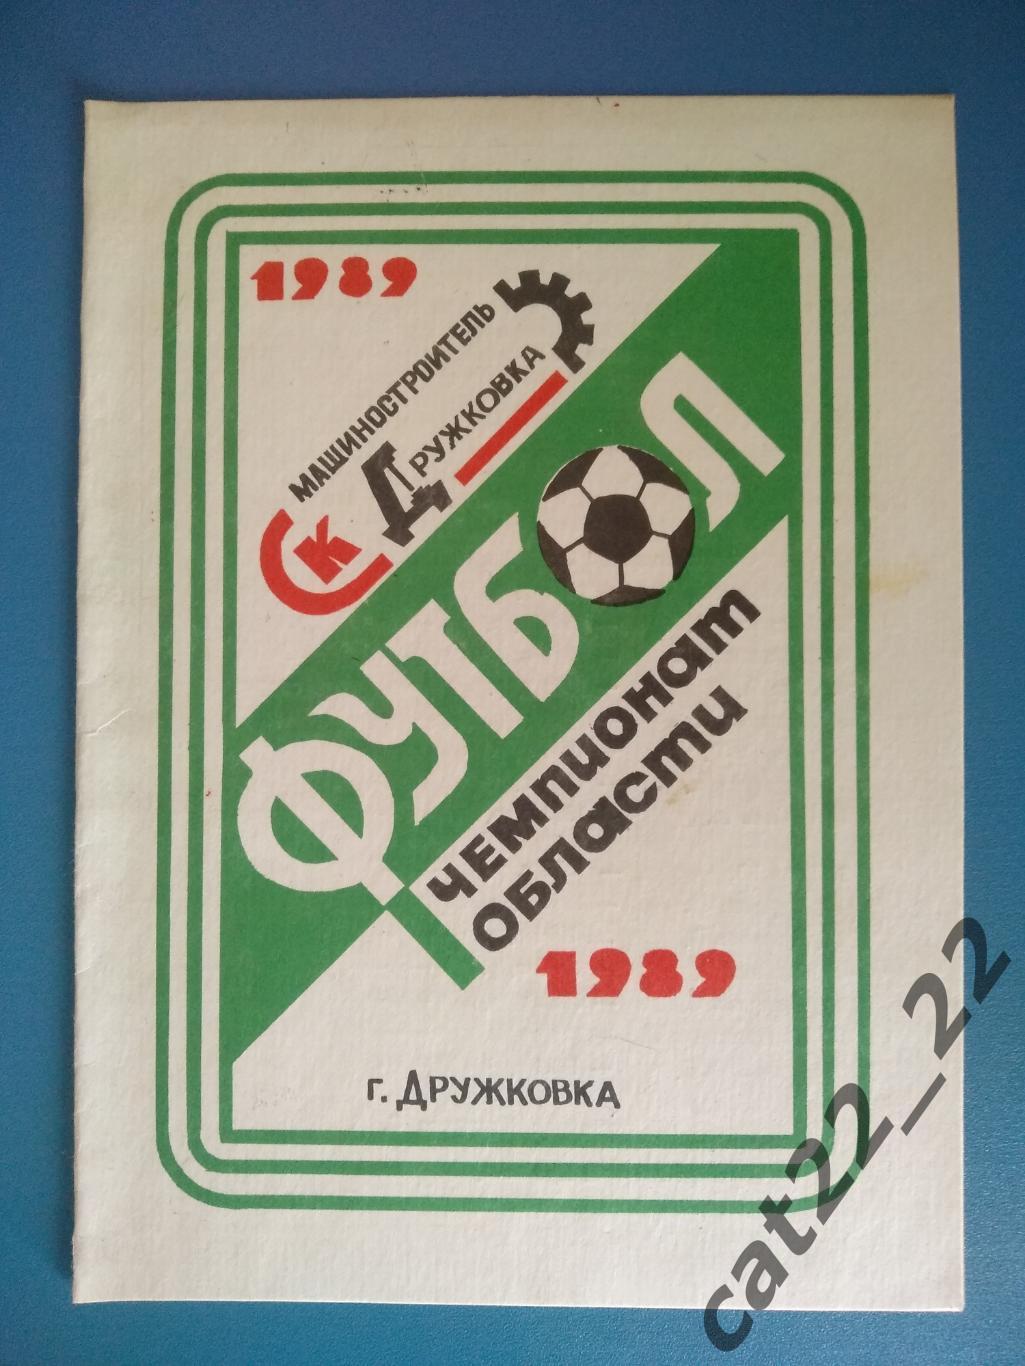 Буклет: Дружковка Донецкая область СССР/Украина 1989